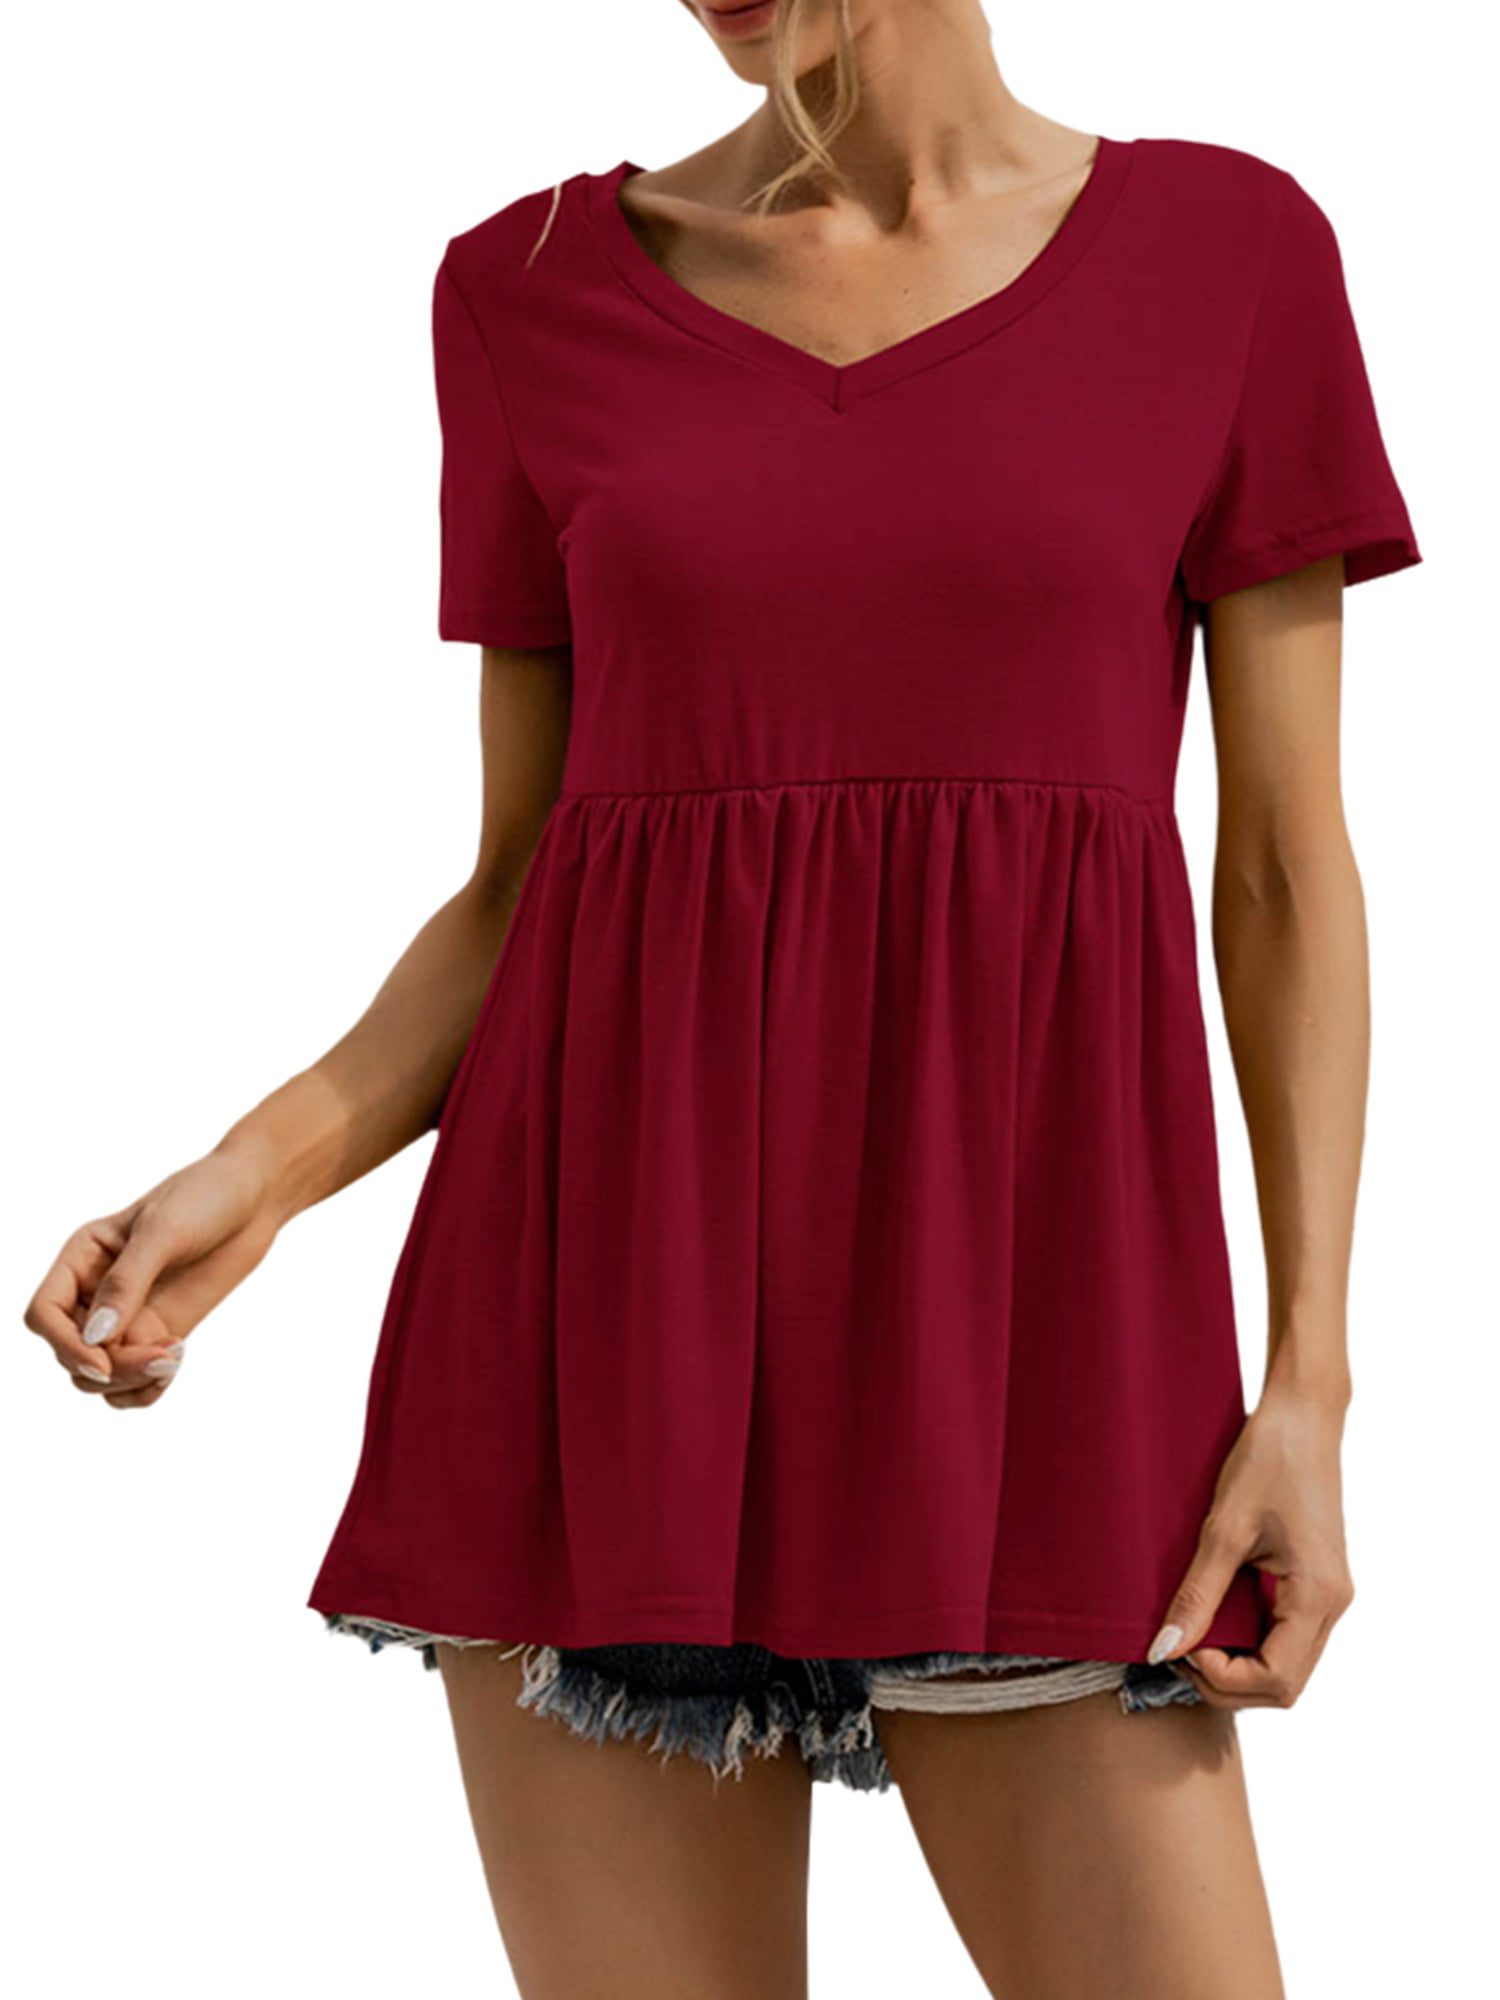 Women Peplum Tops Summer Short Sleeve Plain Swing T-Shirts Ruffle Hem Babydoll Blouse Tops 